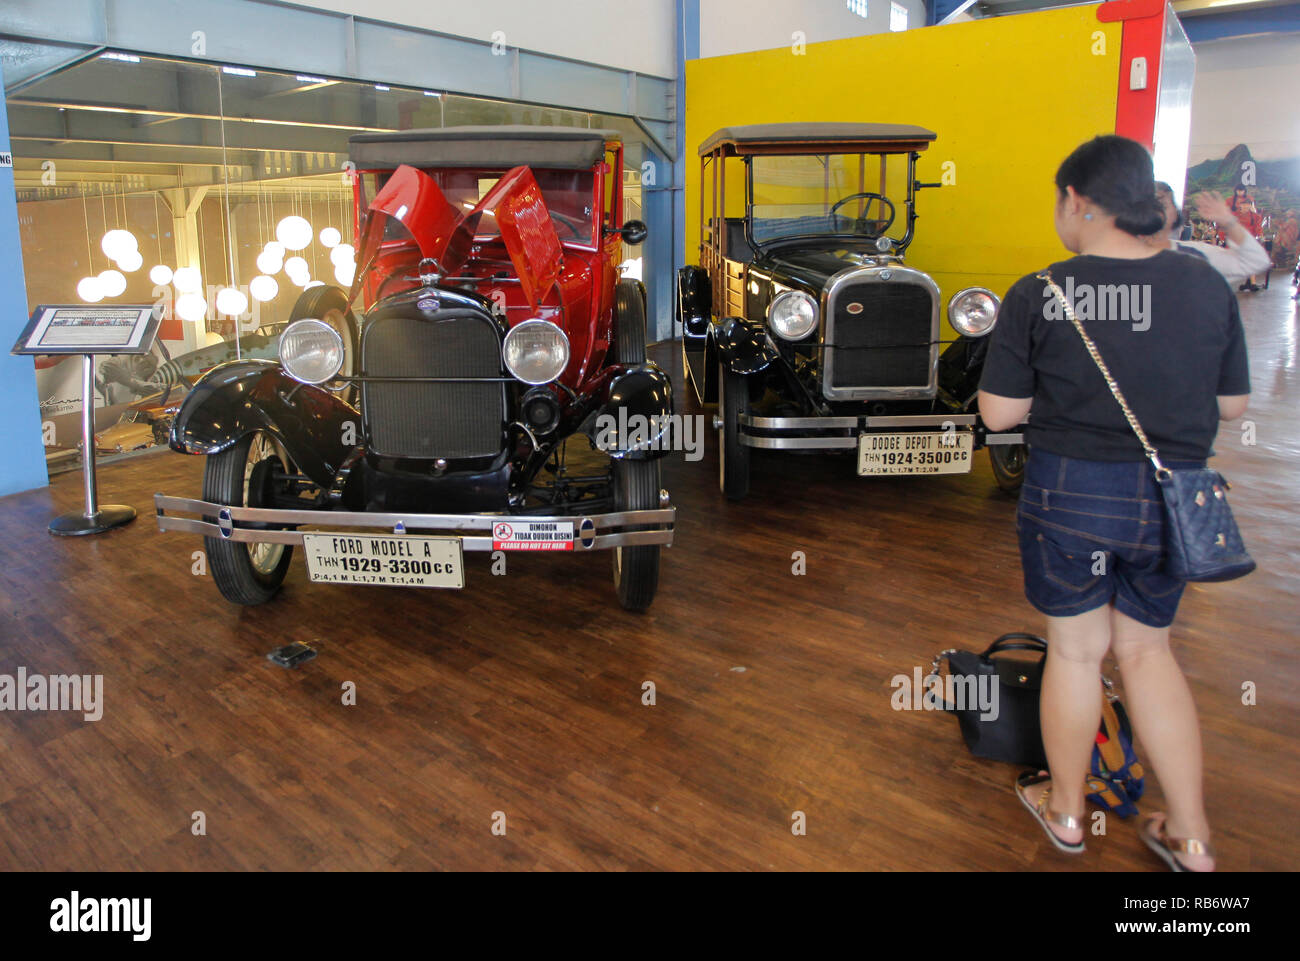 Una donna si vede guardando un vecchio Ford modello A (1929) e Dodge Depot Hack (1924) collezione di auto dal Museo Angkut (Museo dei Trasporti). Questo museo ha migliaia di collezioni di veicoli di varie epoche. Foto Stock